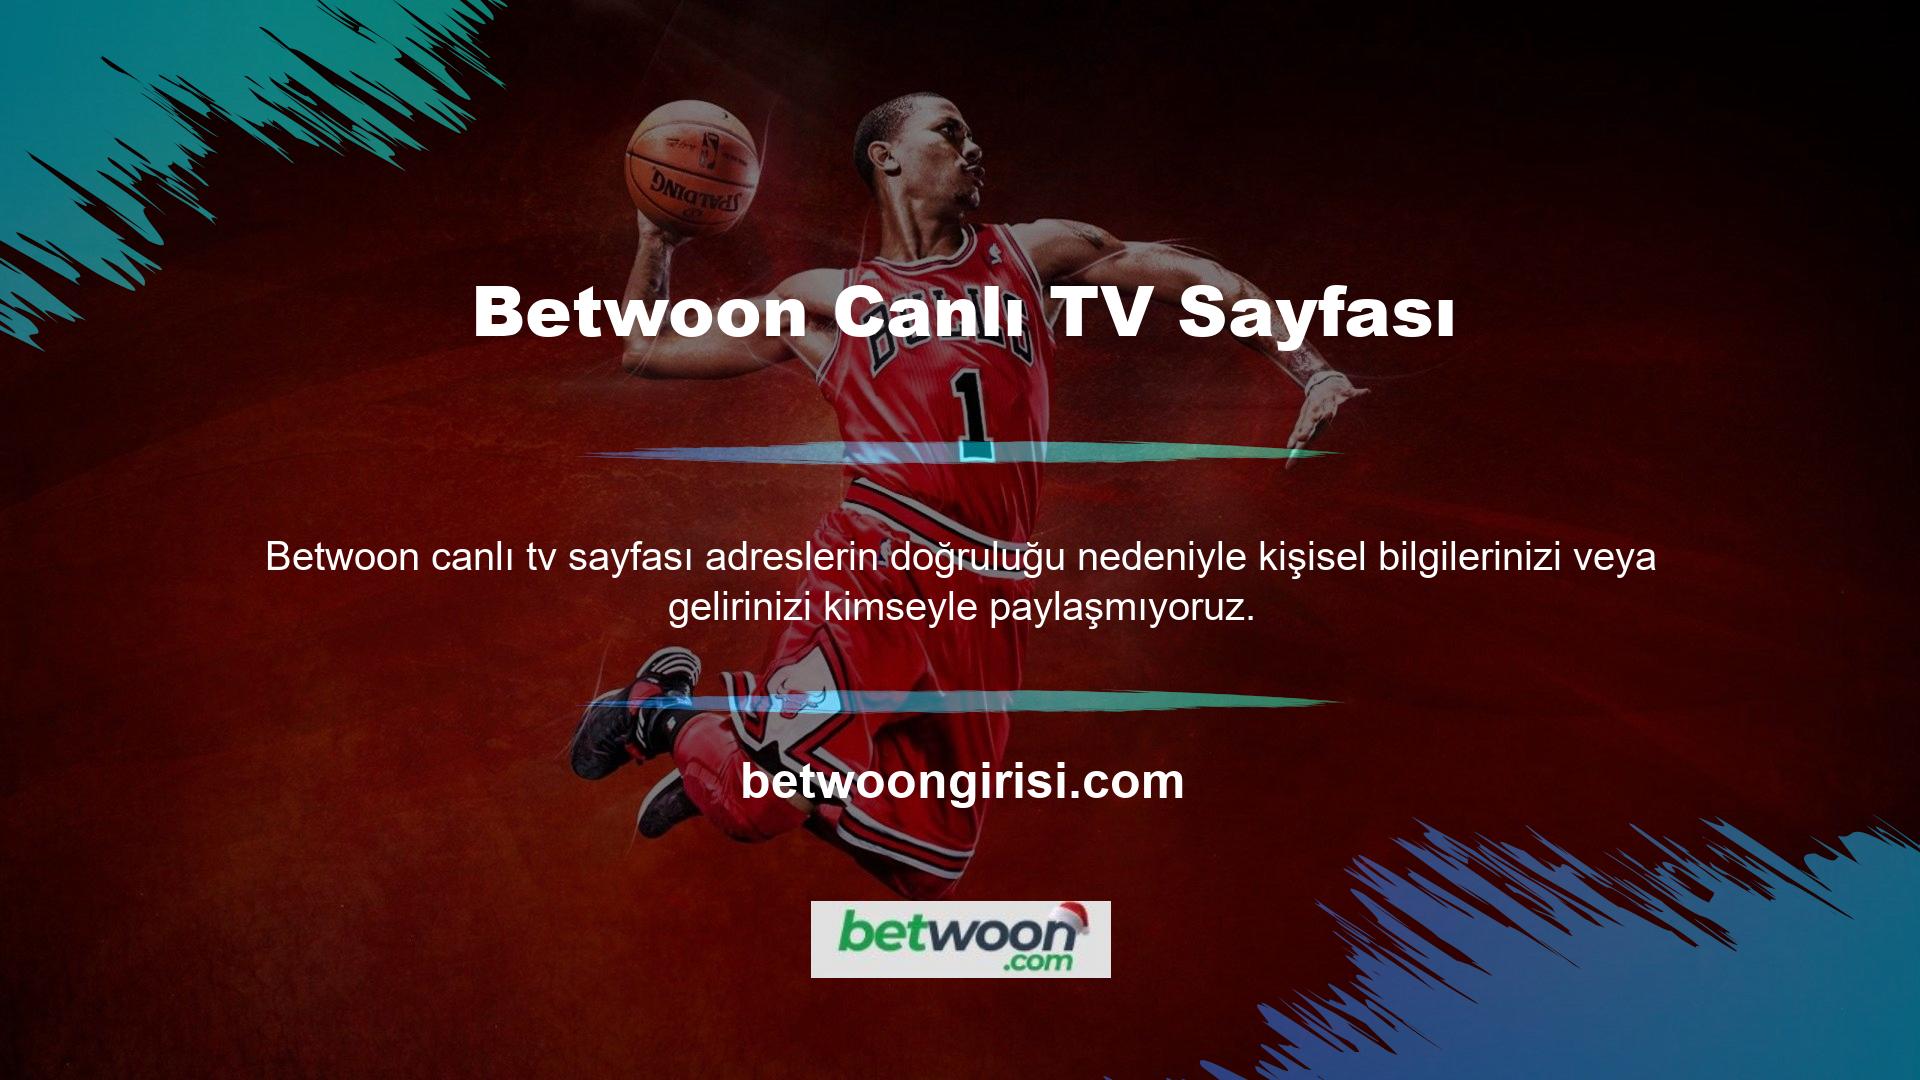 Türkiye'deki tüm spor karşılaşmalarını Betwoon TV platformundan ücretsiz olarak izleyebilirsiniz